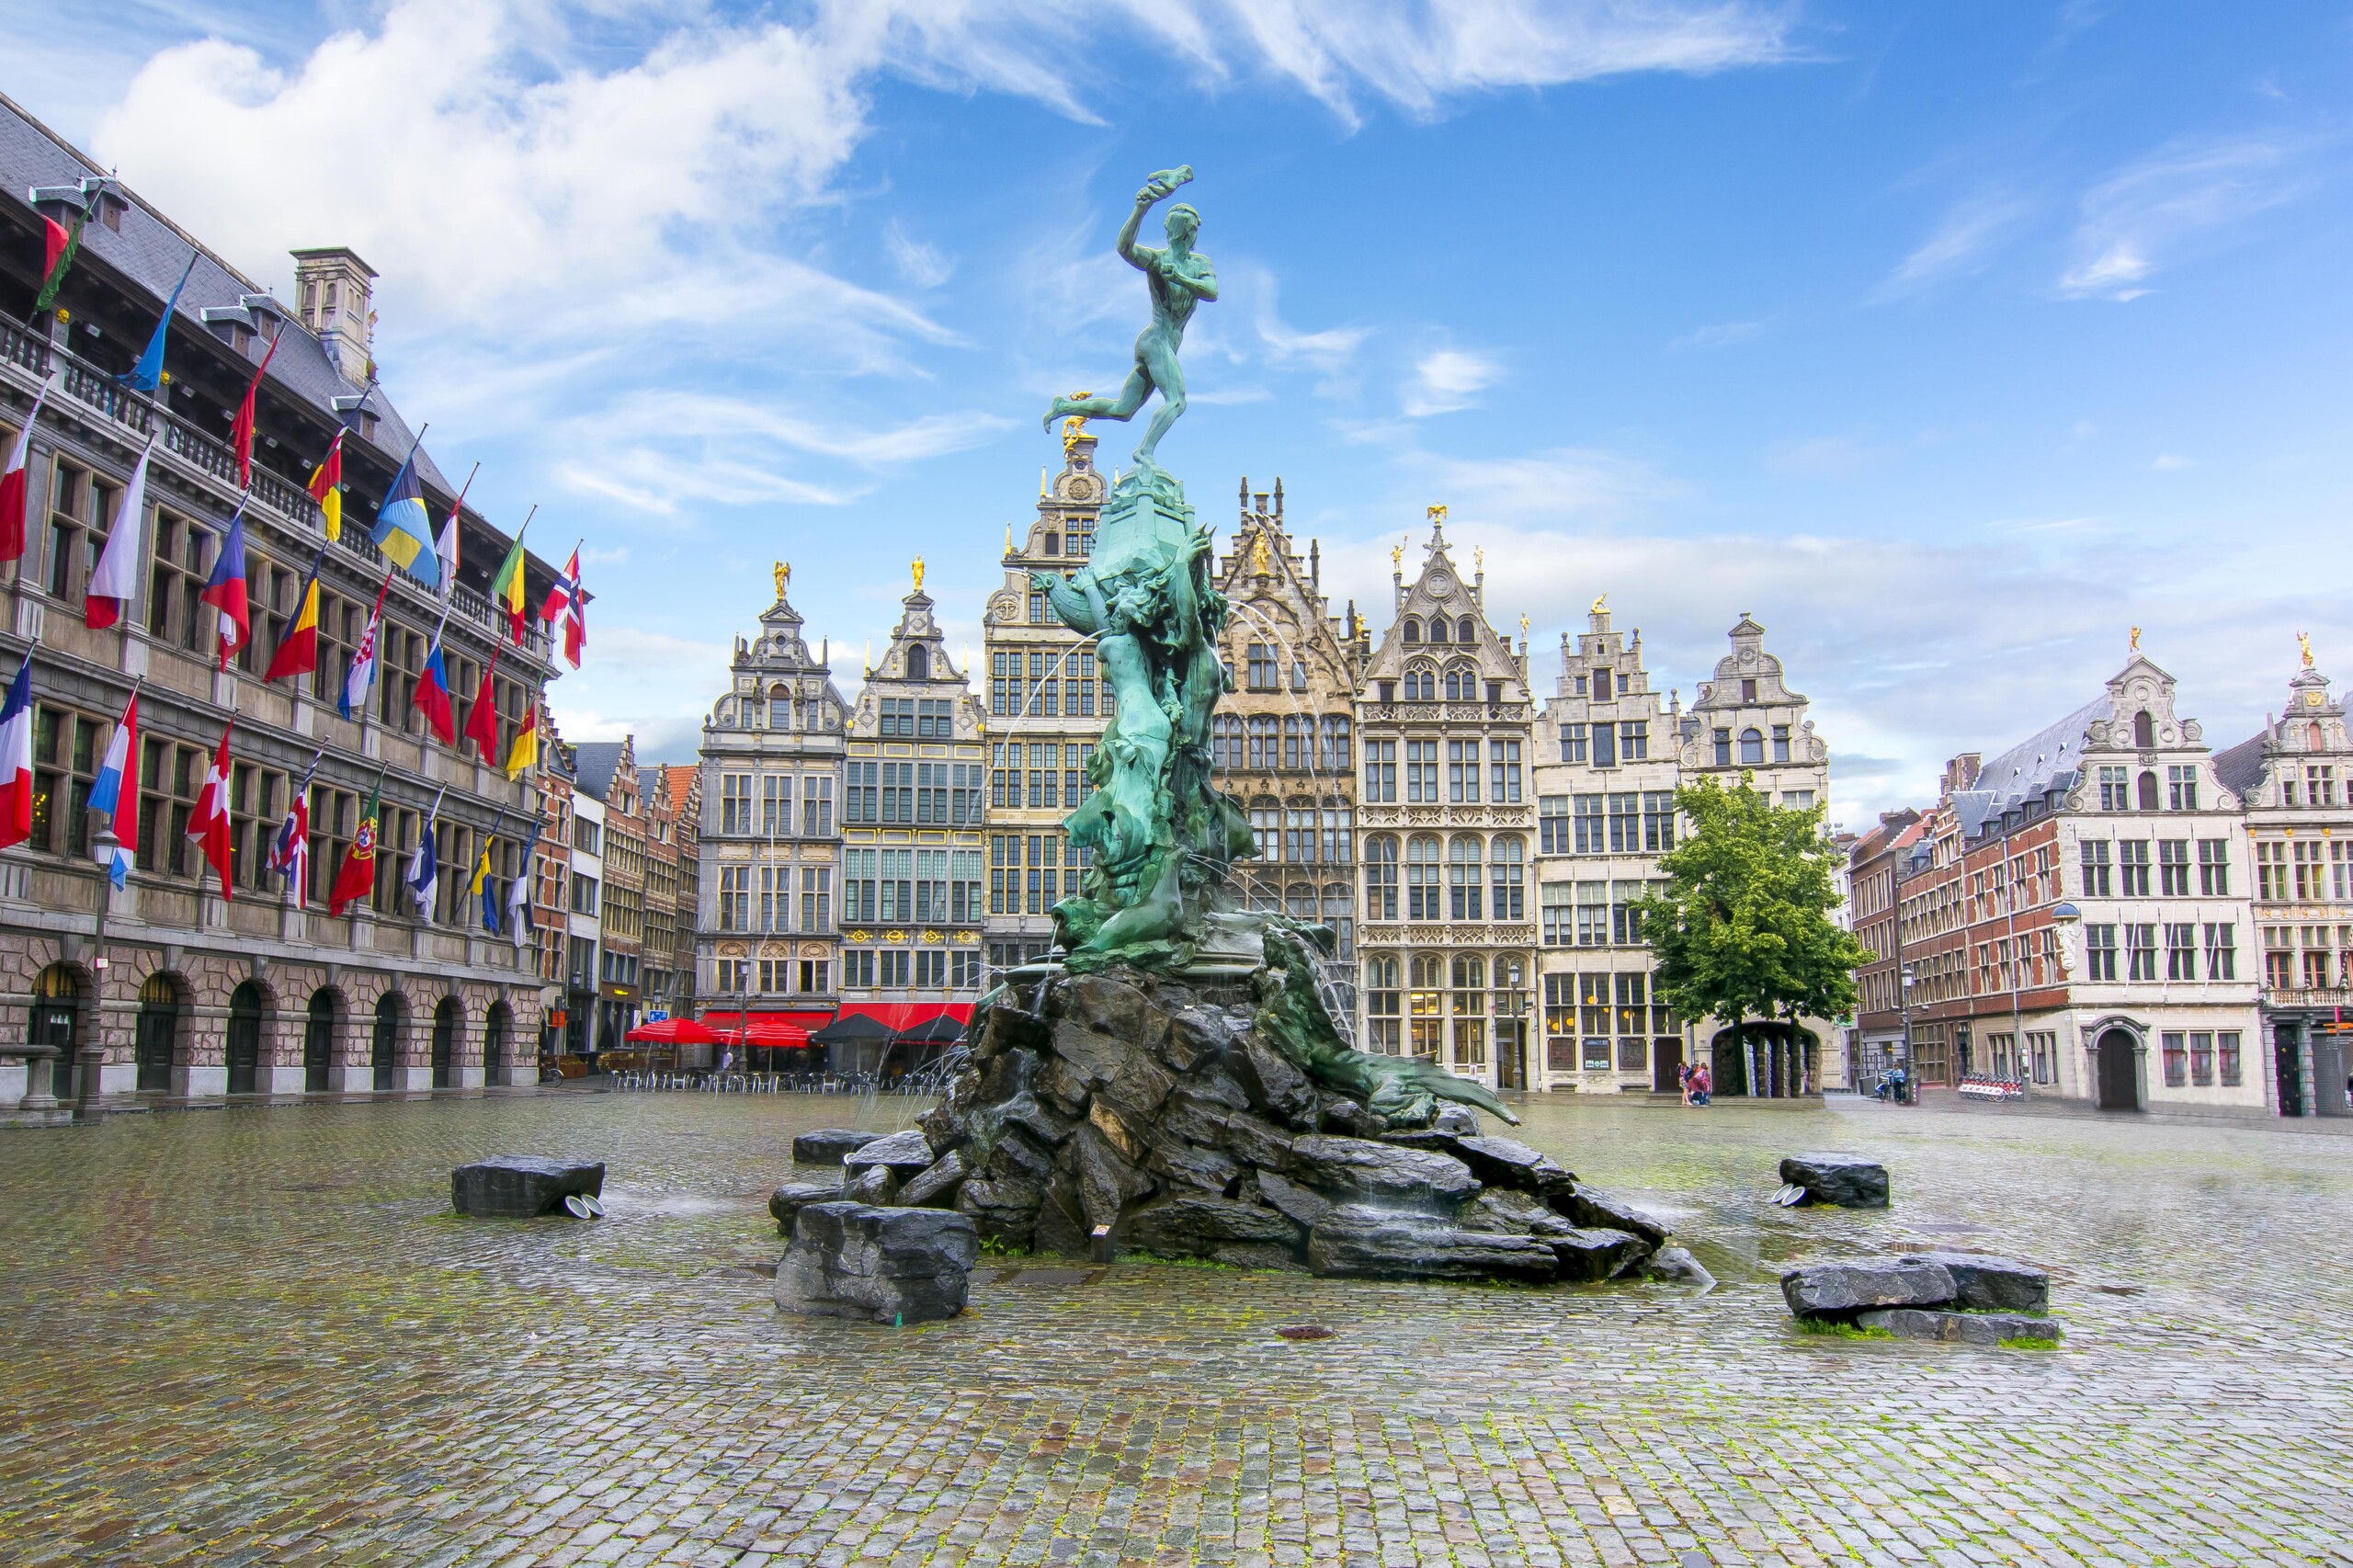 The Brabo Statue in Antwerp, Belgium